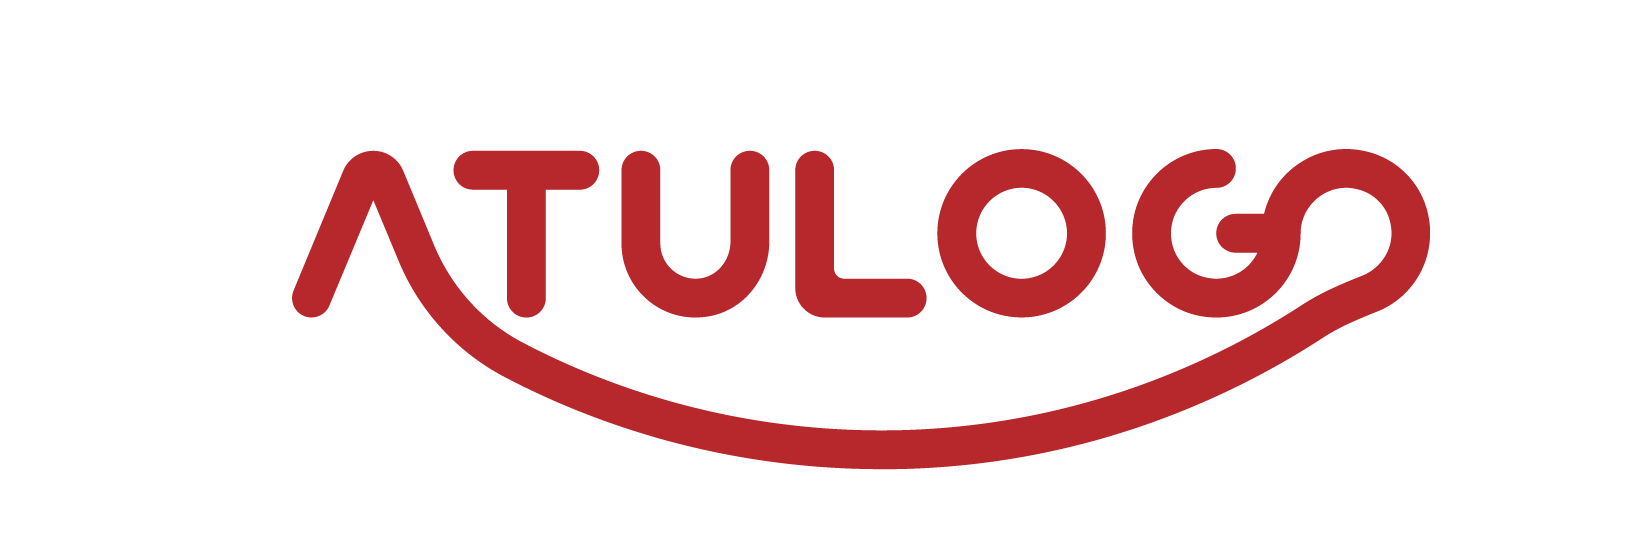 Atulogo